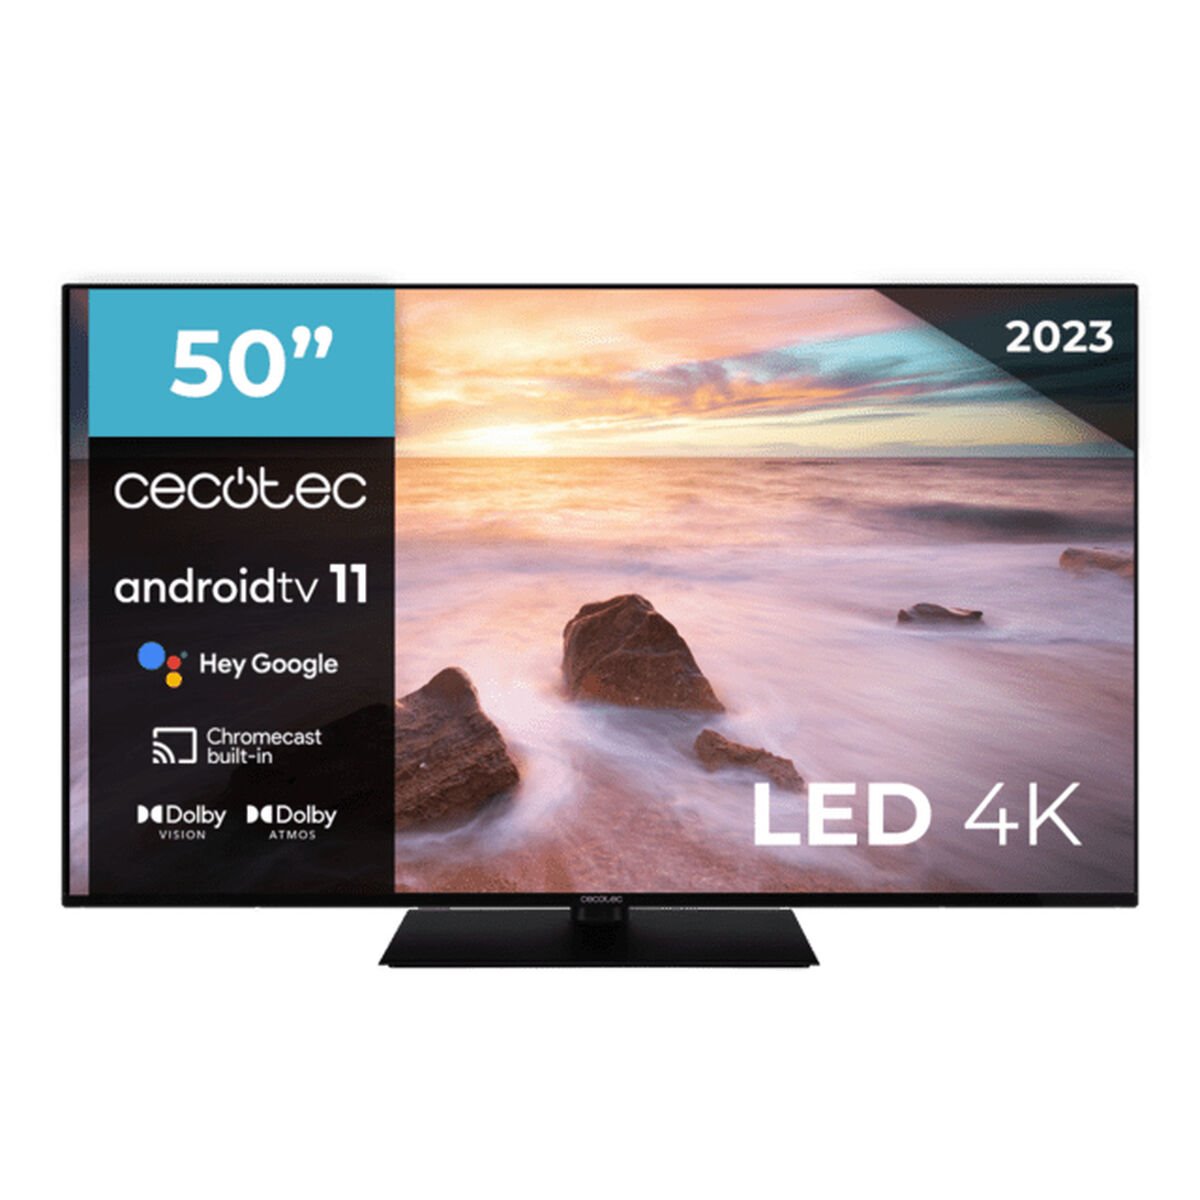 50 pulgadas, 4K UHD y Android TV: este televisor de Cecotec tiene 100 euros  de descuento